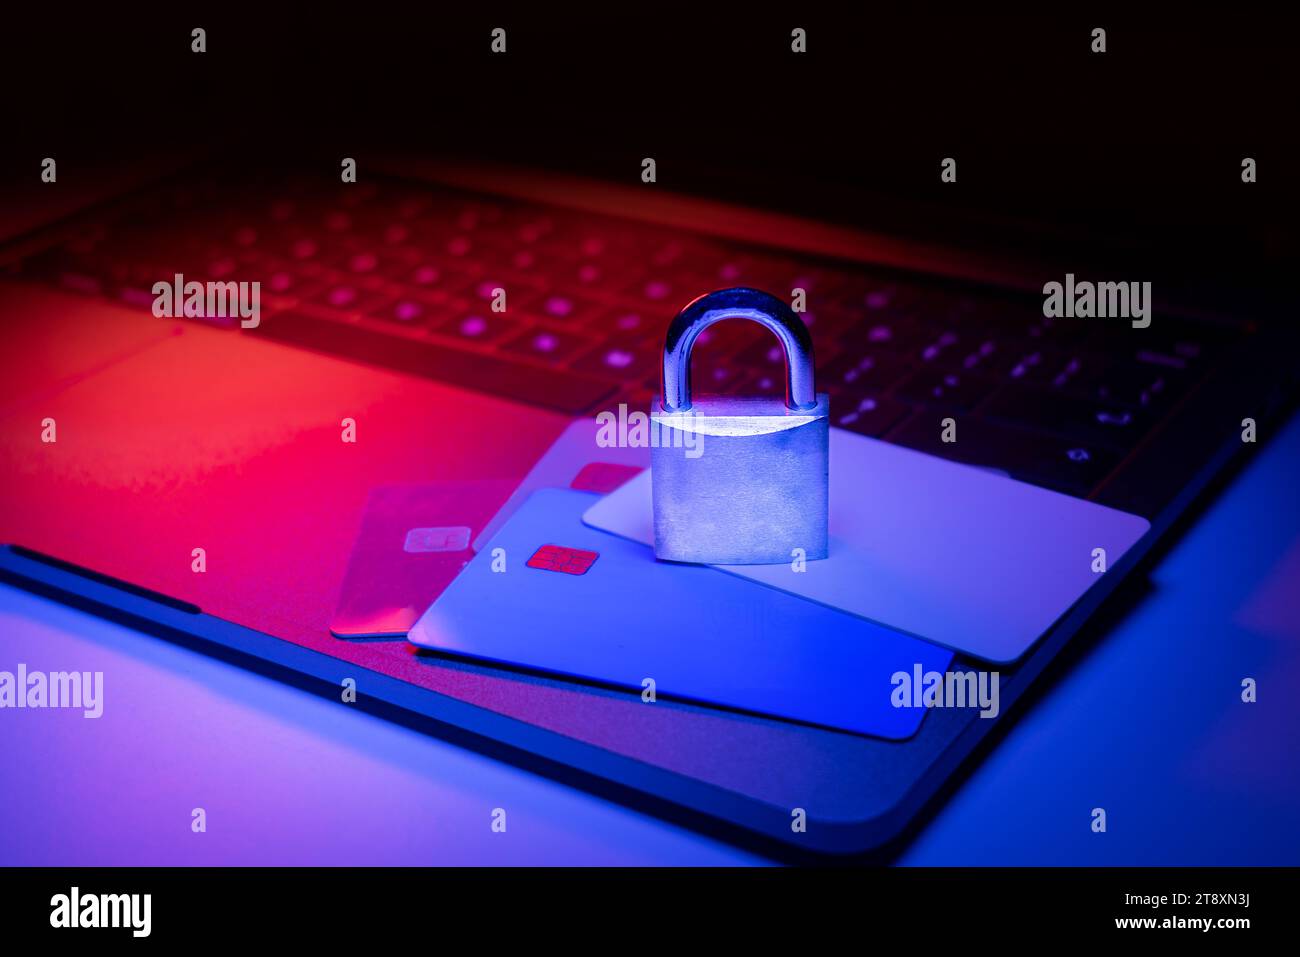 Großaufnahme eines Vorhängeschlosses auf einem Laptop und einer Kreditkarte, die mit blauem und rotem Licht beleuchtet ist. Phishing, Cybersicherheitsgefahr oder Ransomware-Angriff. Verschlüsselte p Stockfoto